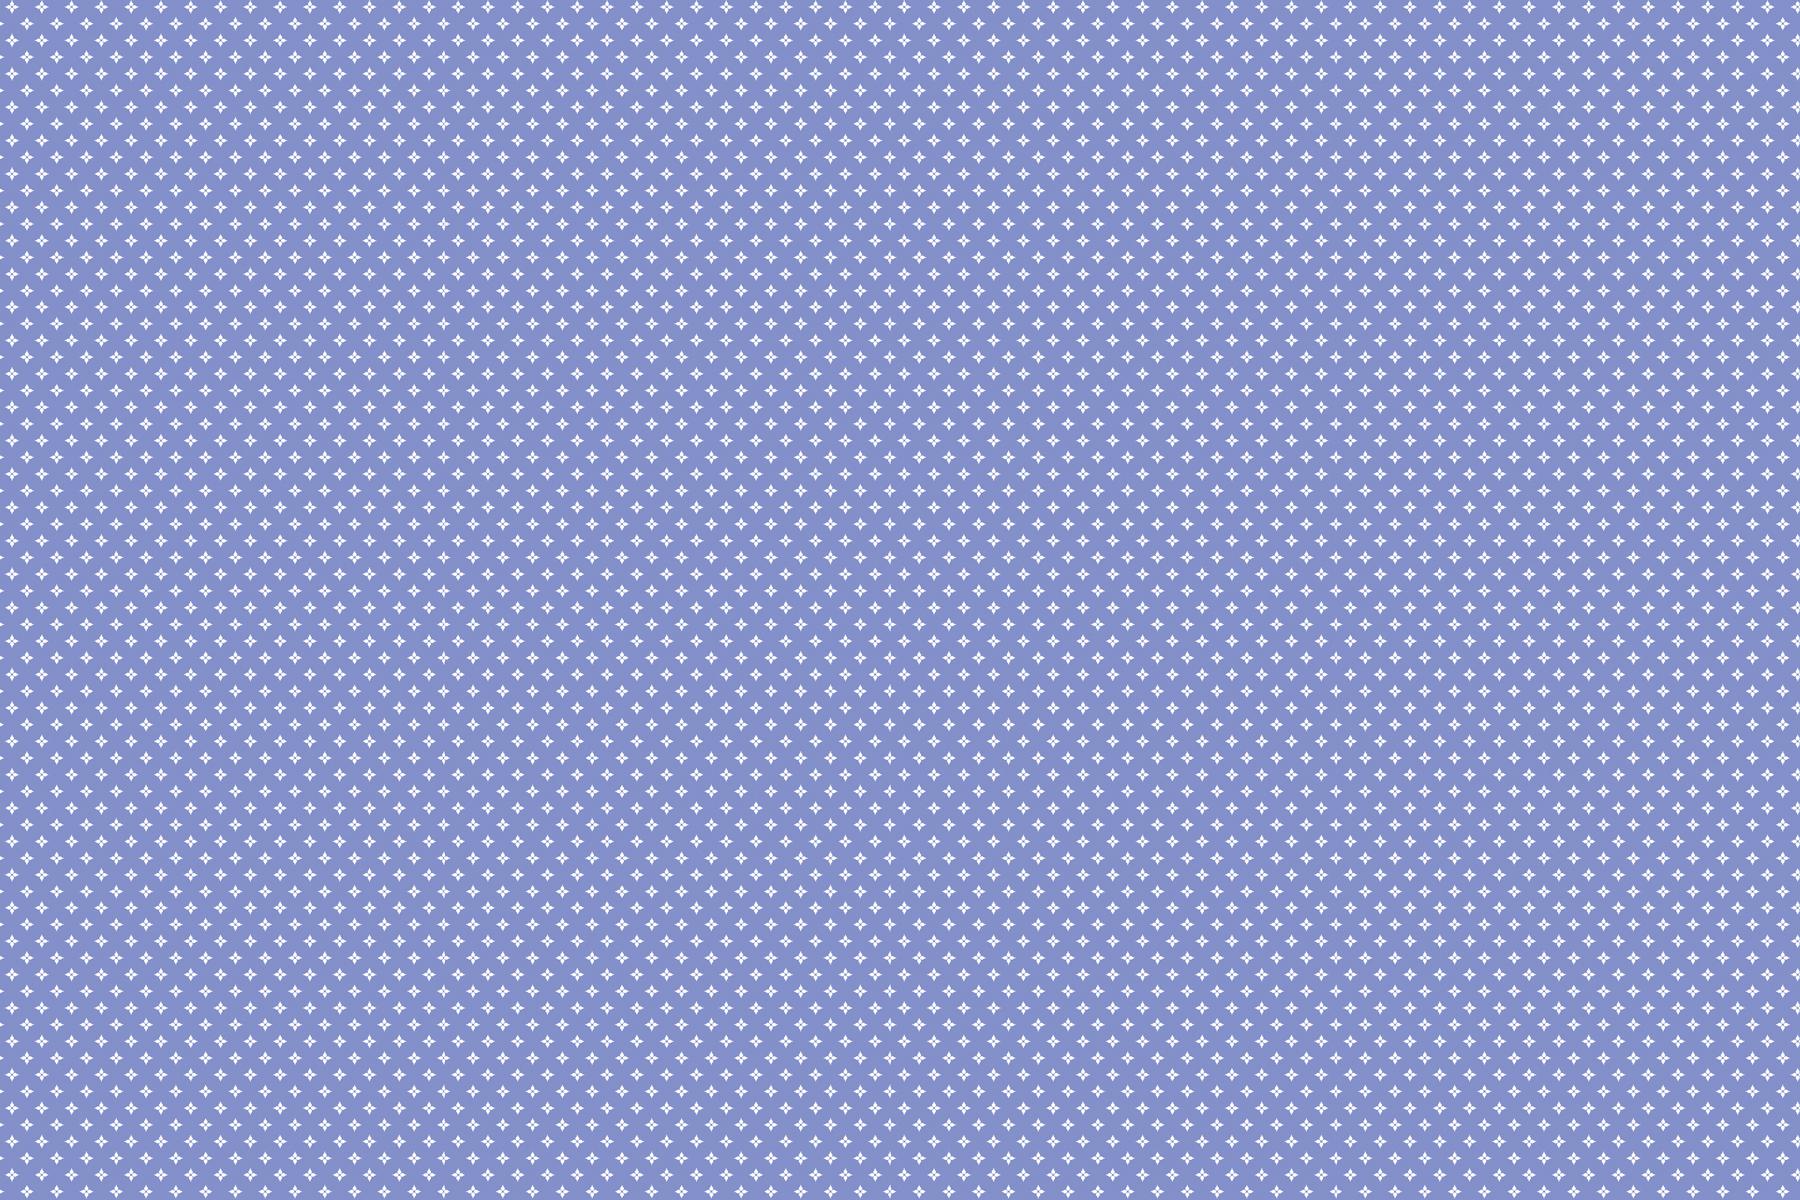 Purple Tiles for Bathroom Tiles, Kitchen Tiles, Accent Tiles